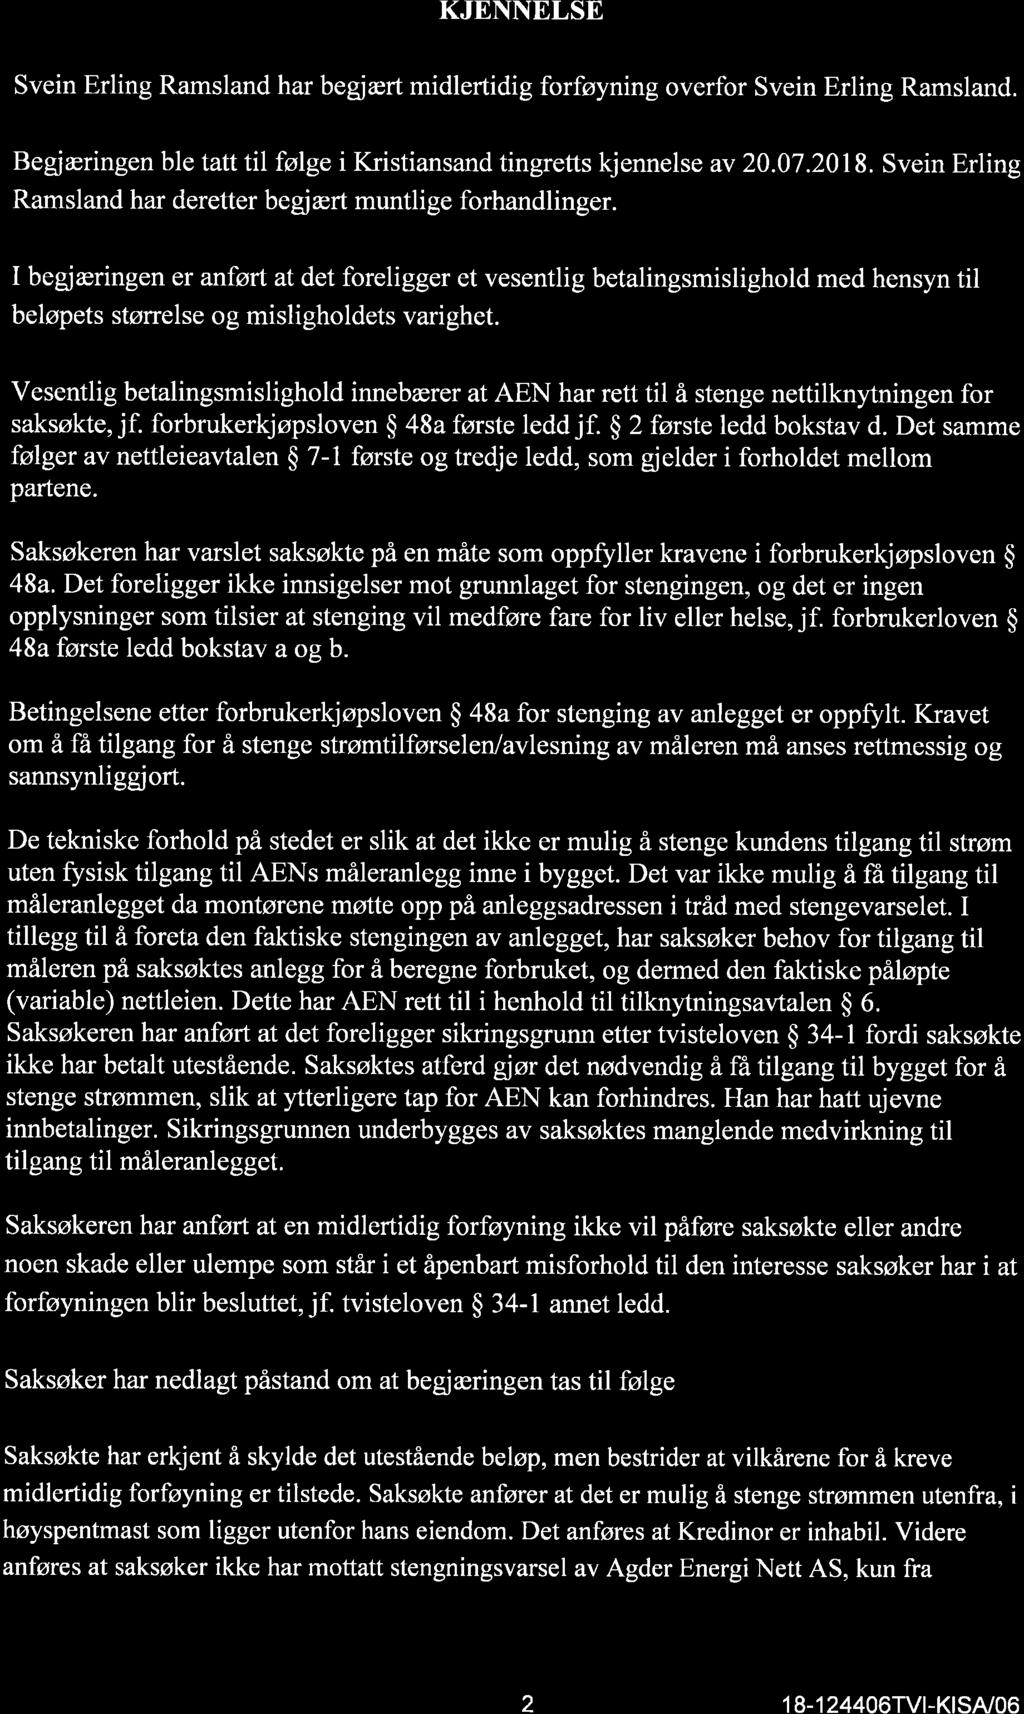 KJENNELSE Svein Erling Ramsland har begjært midlertidig forføyning overfor Svein Erling Ramsland. Begiæringen ble tatt til følge i Kristiansand tingretts kjennelse av 20.07.2018.